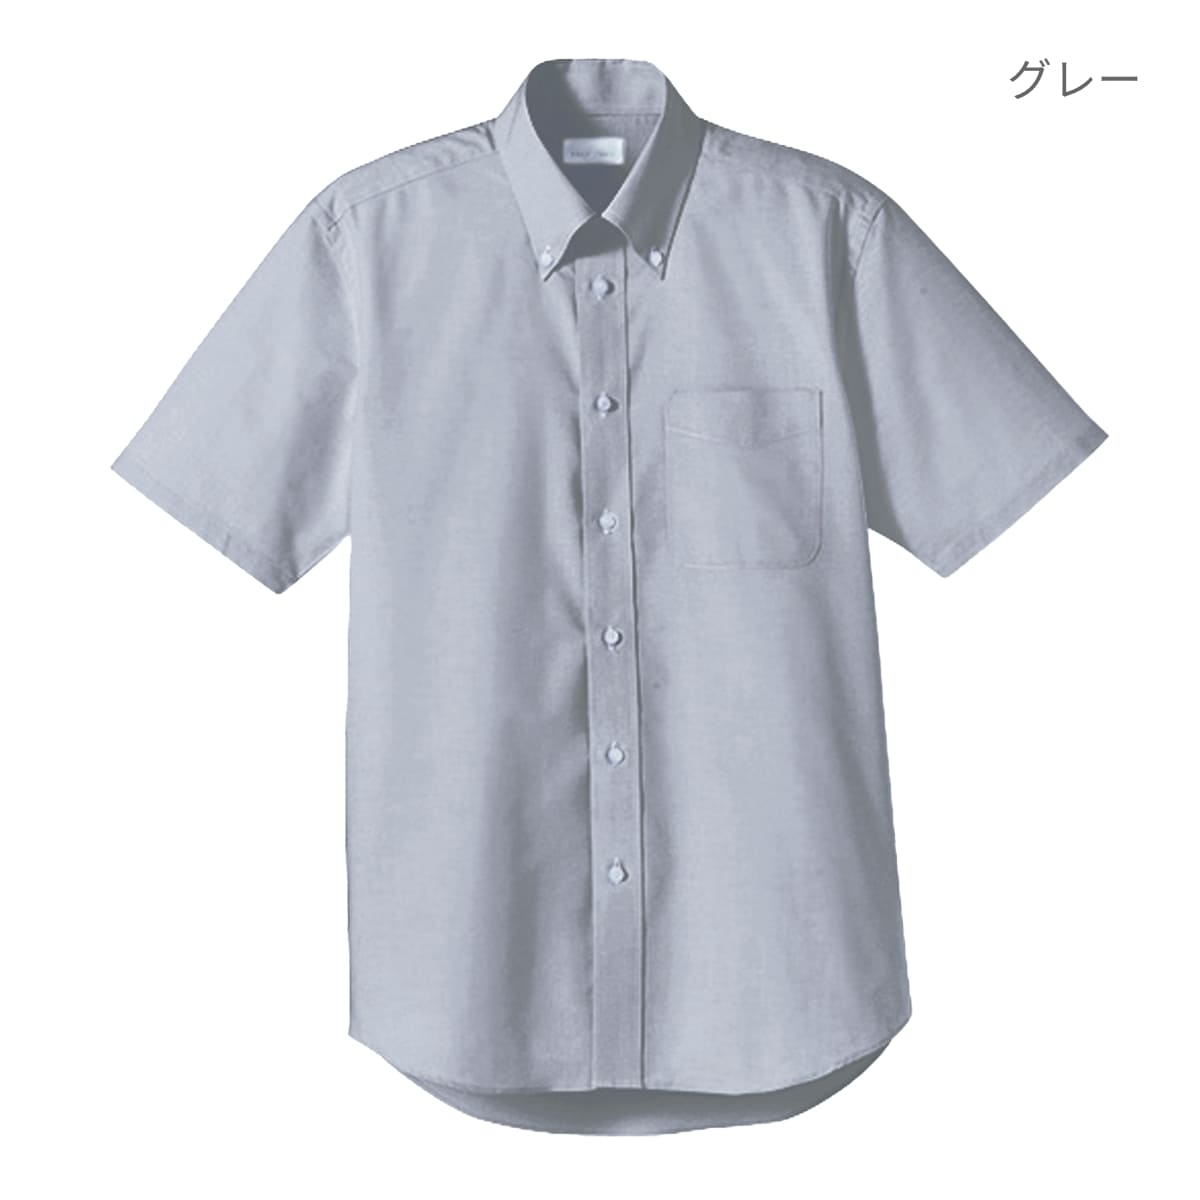 ユニセックスシャツ（半袖） | メンズ | 1枚 | FB4511U | イエロー